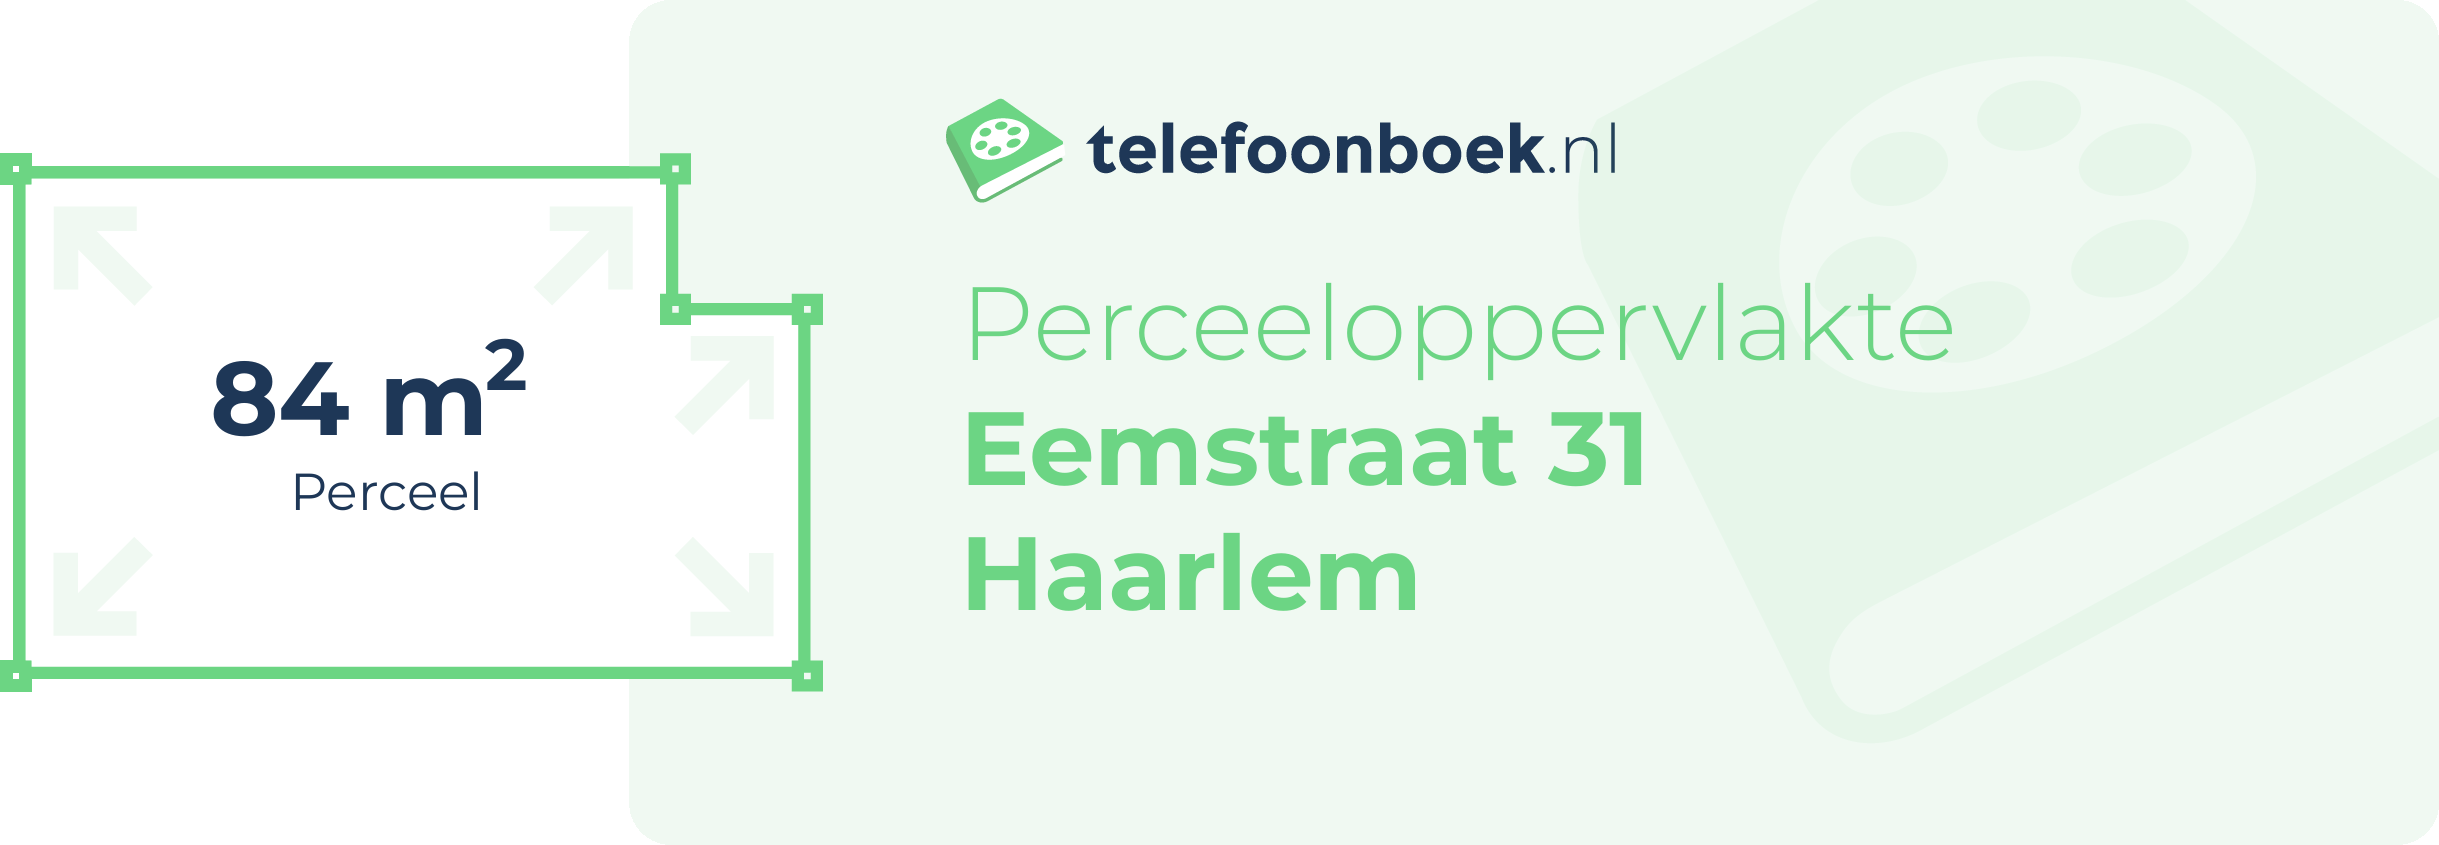 Perceeloppervlakte Eemstraat 31 Haarlem